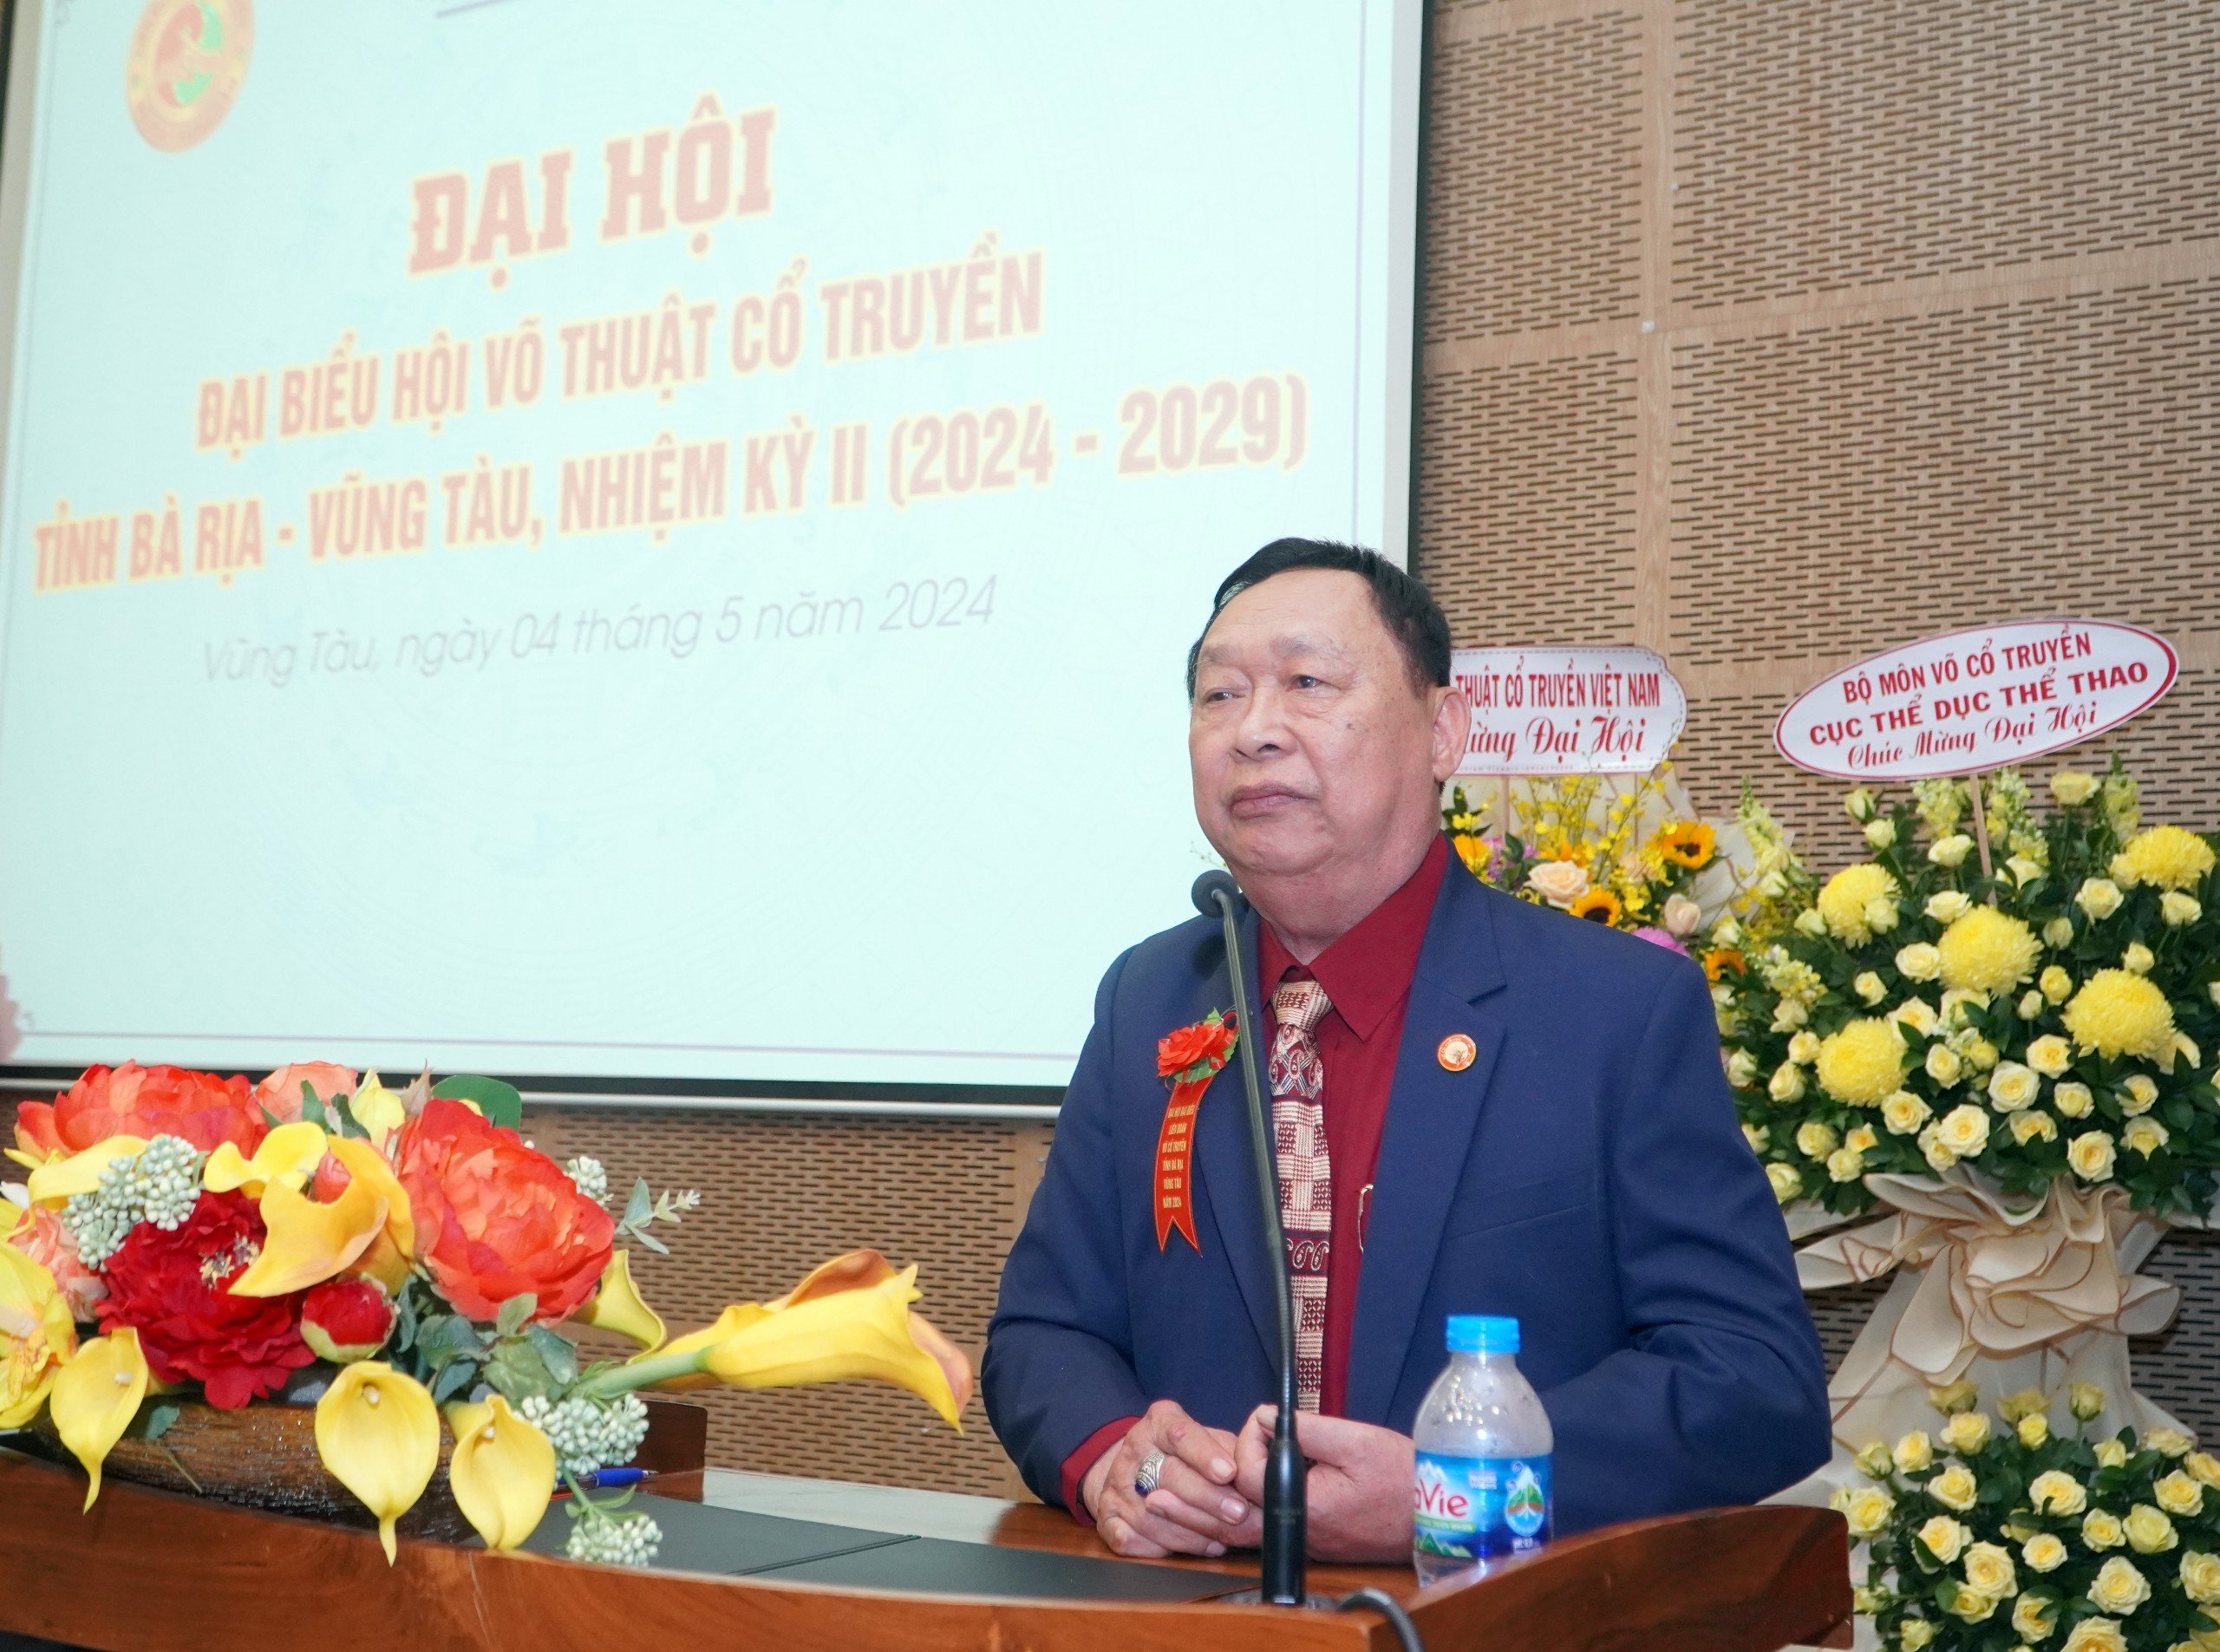 Đại võ sư quốc tế Lê Kim Hòa, Phó Chủ tịch Liên đoàn võ thuật cổ truyền Việt Nam tham dự và phát biểu tại Đại hội,